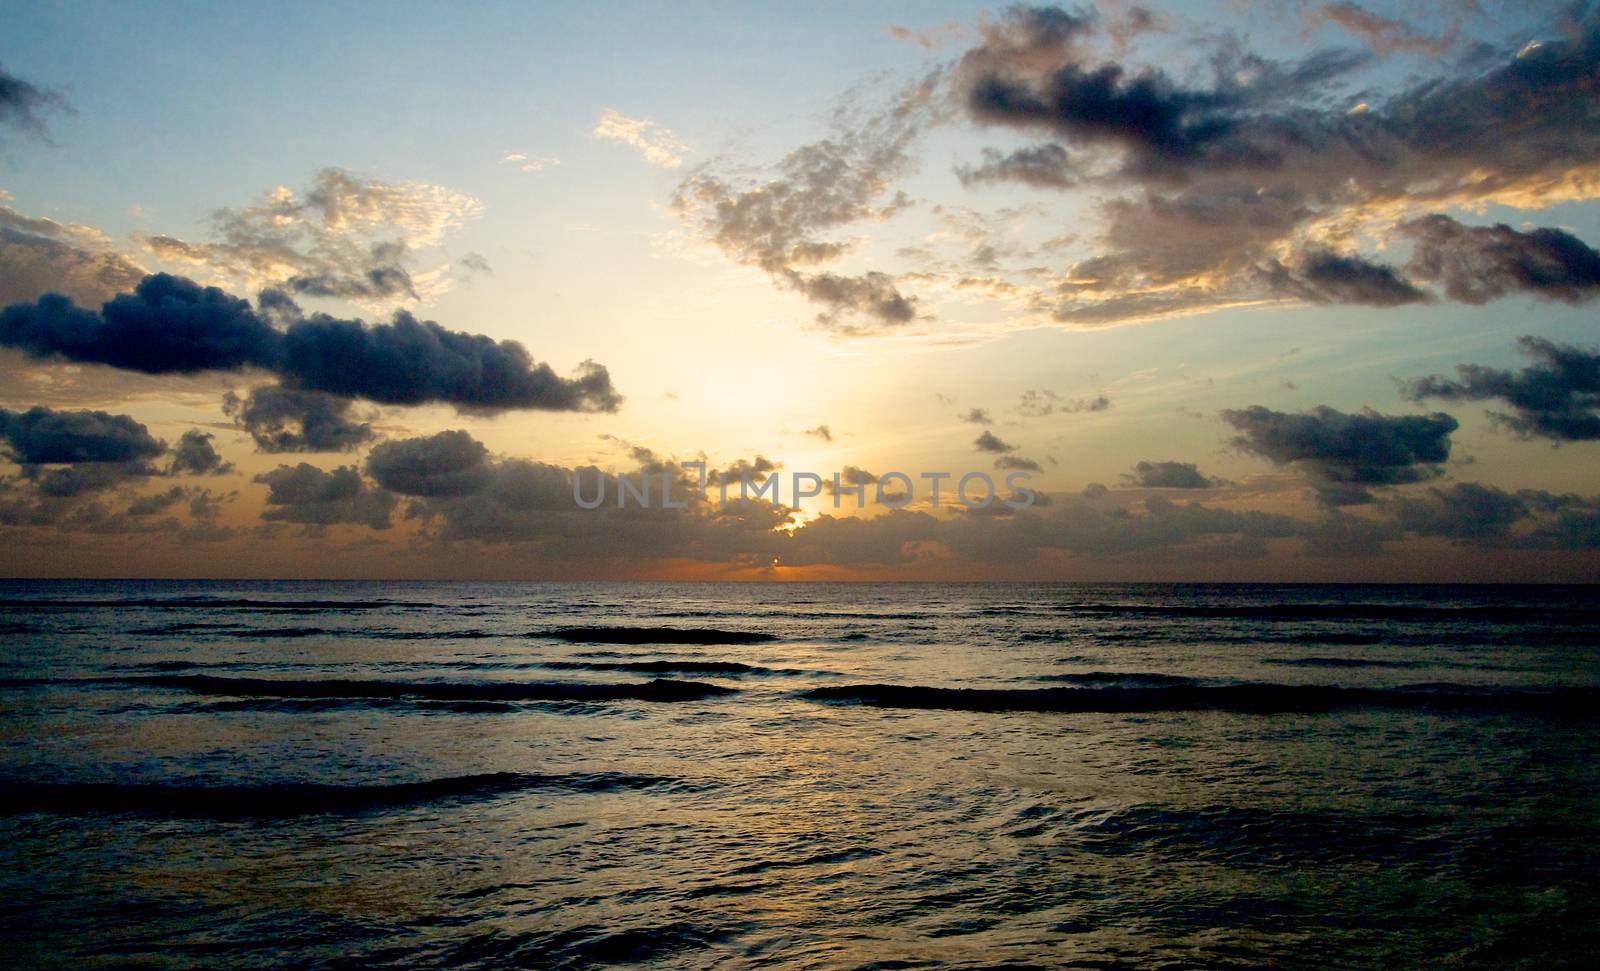 Indian Ocean Sunrise by zhekos